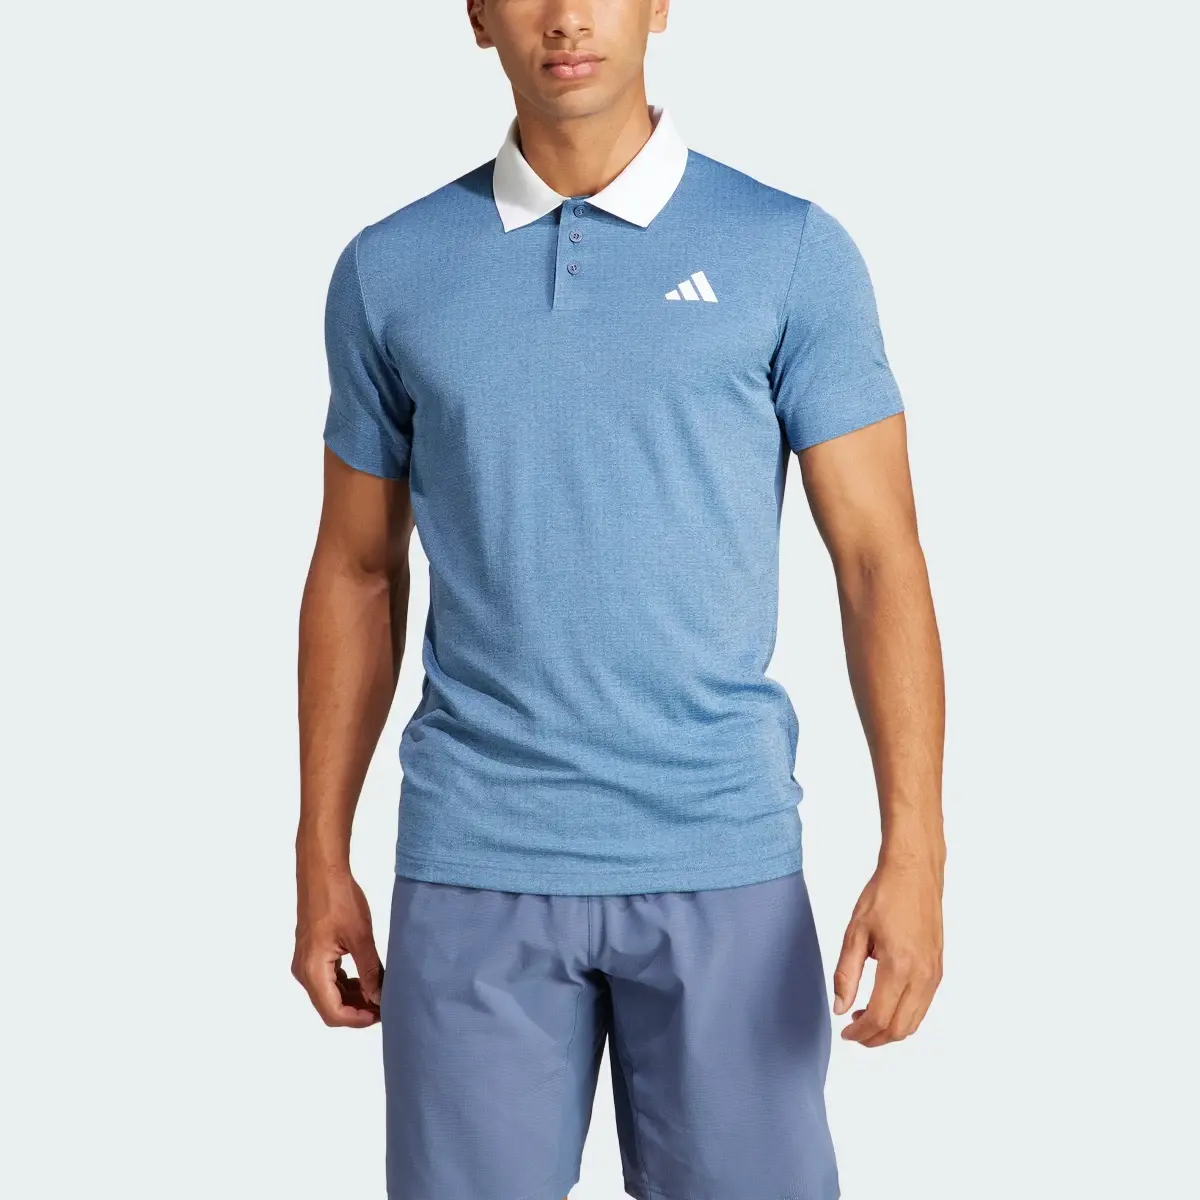 Adidas Koszulka Tennis FreeLift Polo. 1